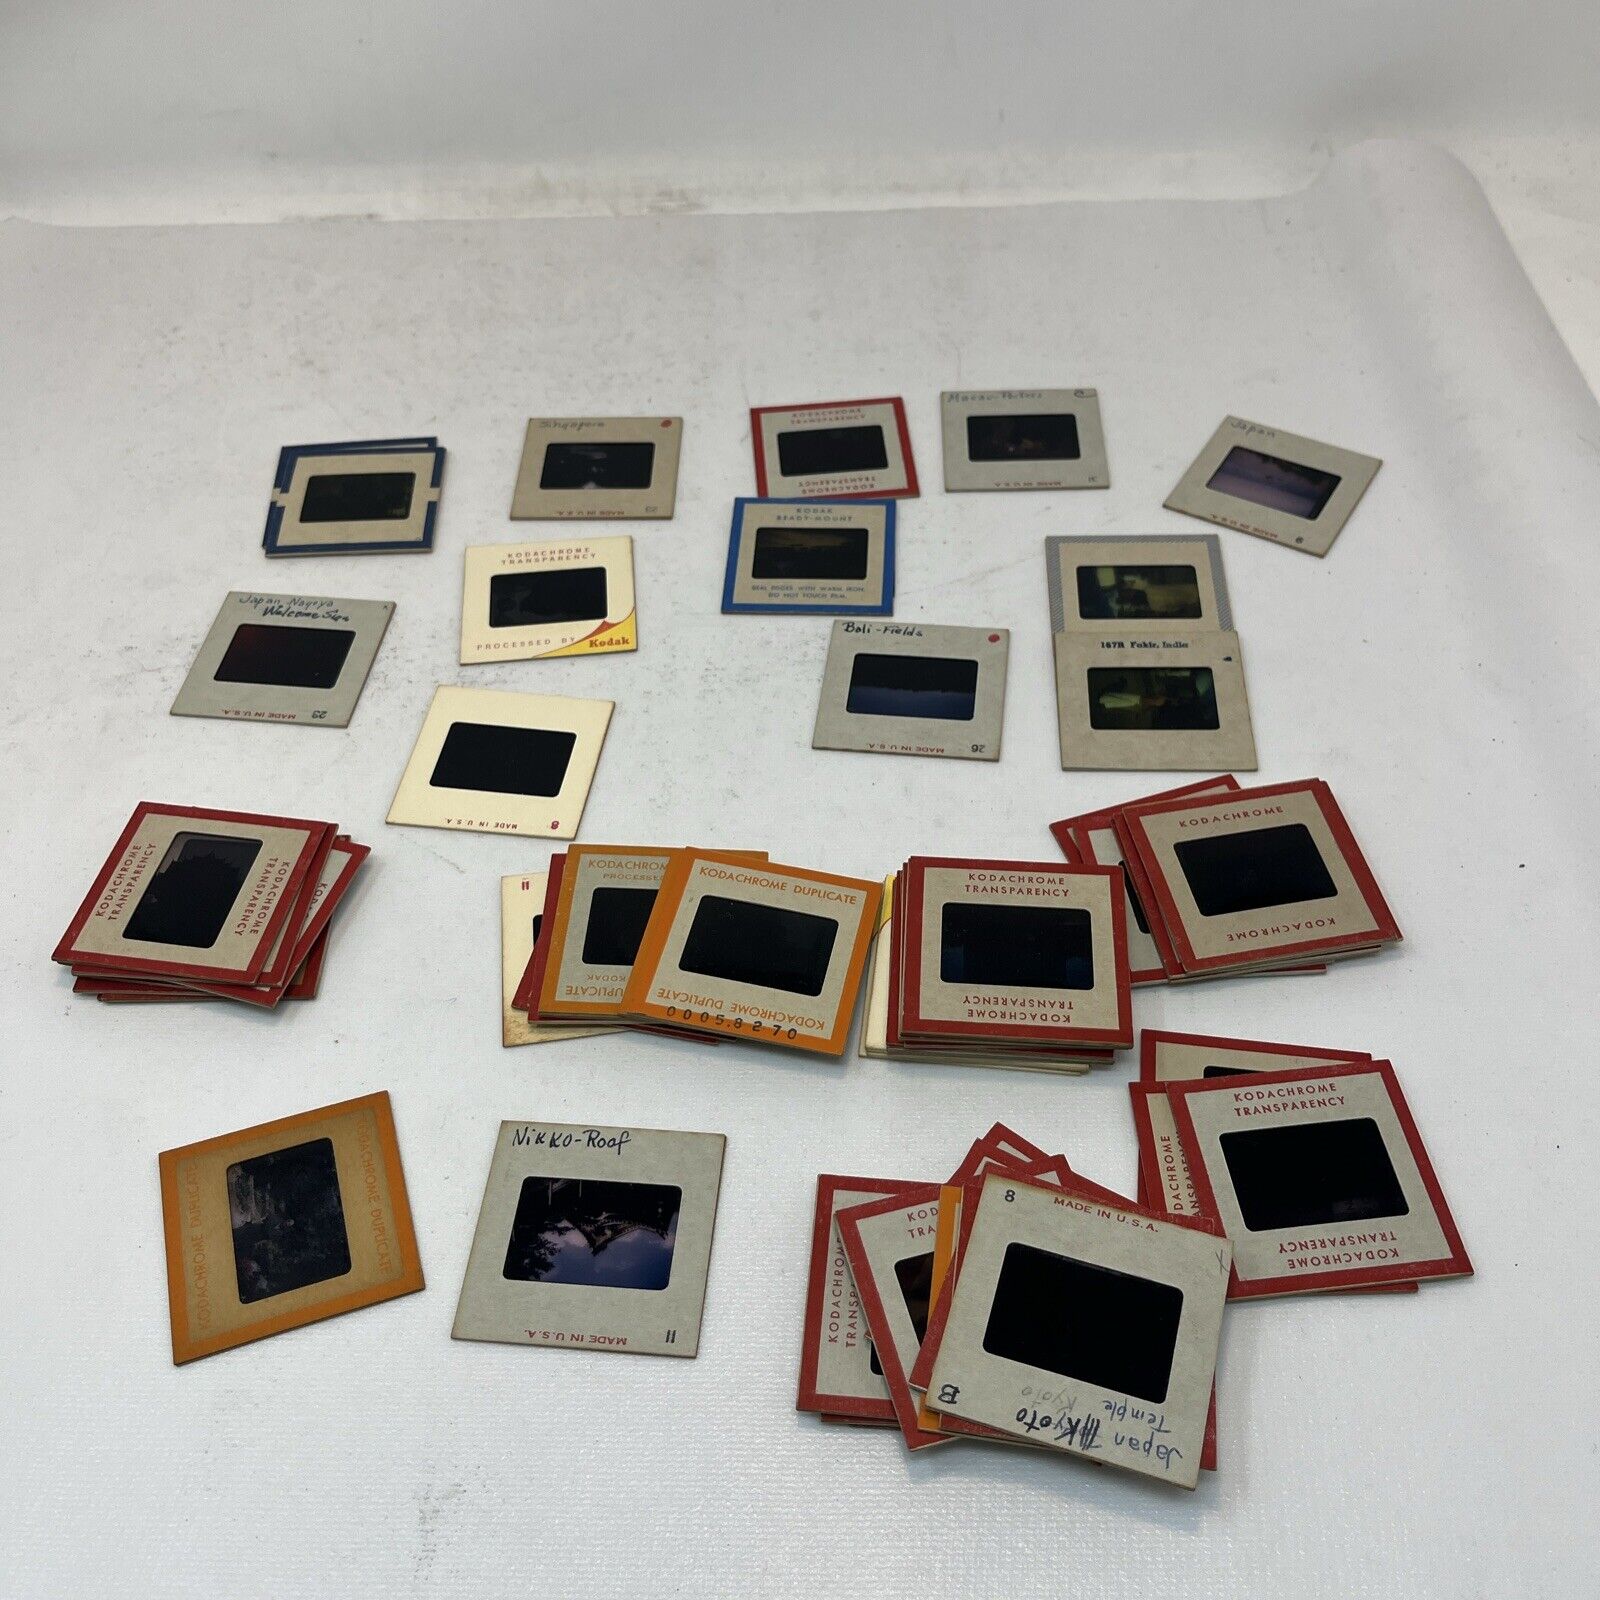 Vintage Kodak Slides (56) Kodachrome Color Transparency - Travel Slides